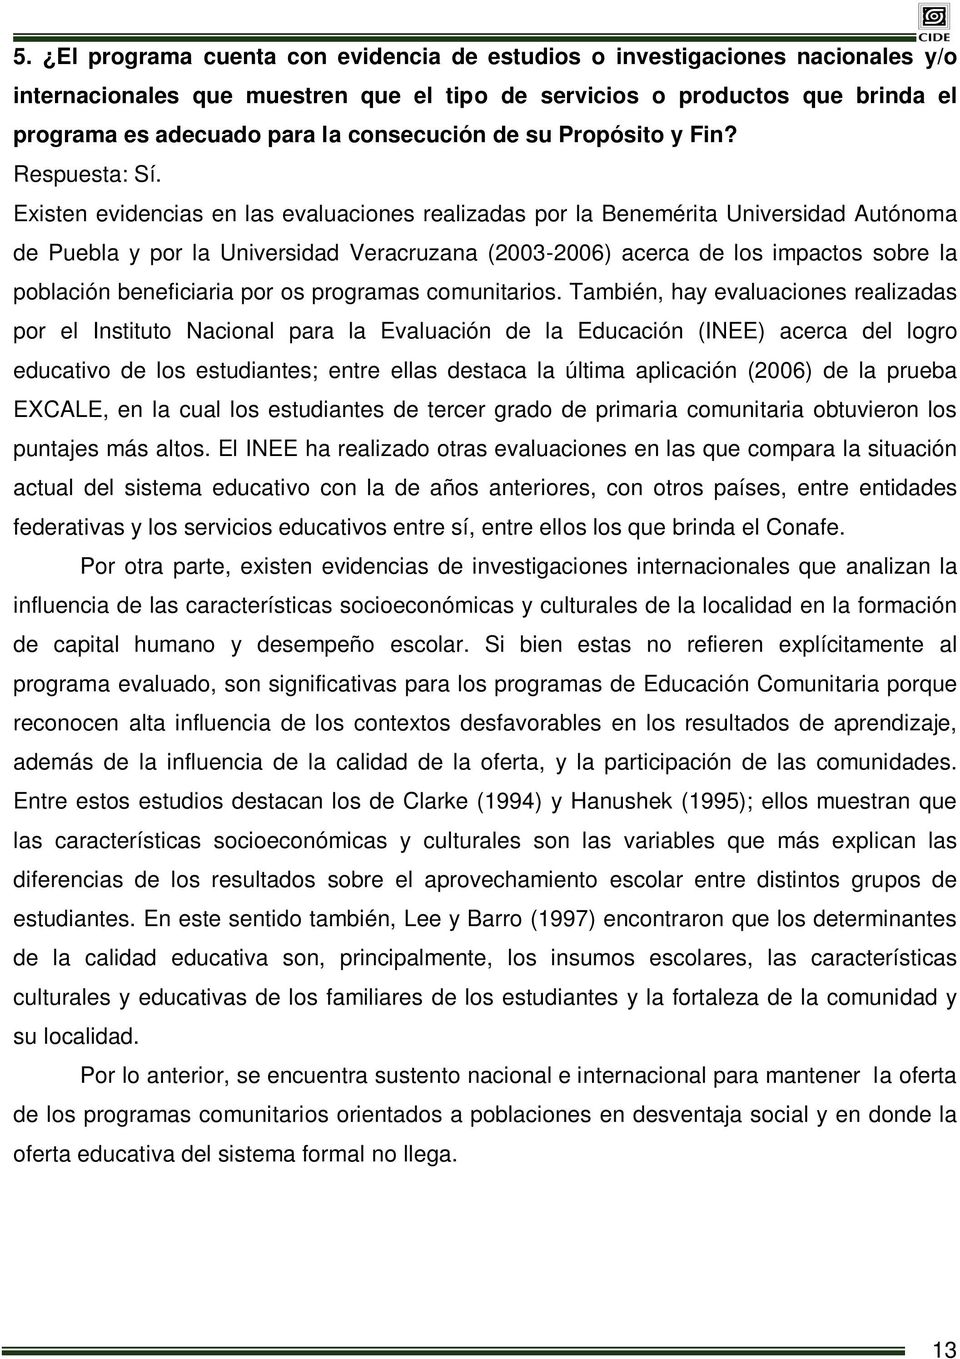 Existen evidencias en las evaluaciones realizadas por la Benemérita Universidad Autónoma de Puebla y por la Universidad Veracruzana (2003-2006) acerca de los impactos sobre la población beneficiaria